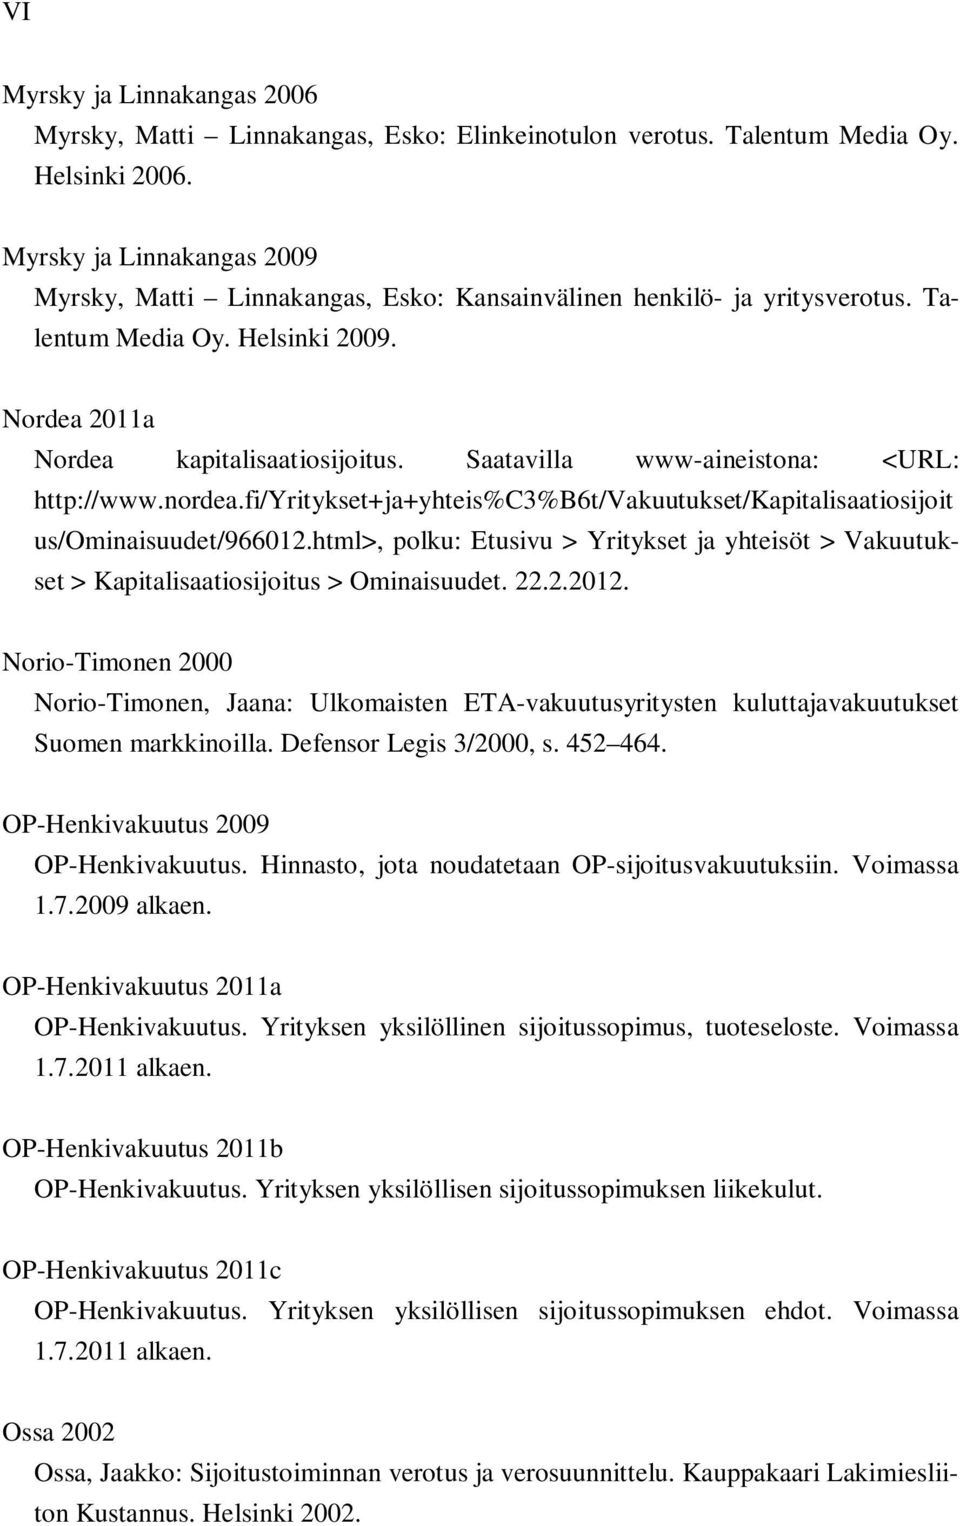 Saatavilla www-aineistona: <URL: http://www.nordea.fi/yritykset+ja+yhteis%c3%b6t/vakuutukset/kapitalisaatiosijoit us/ominaisuudet/966012.